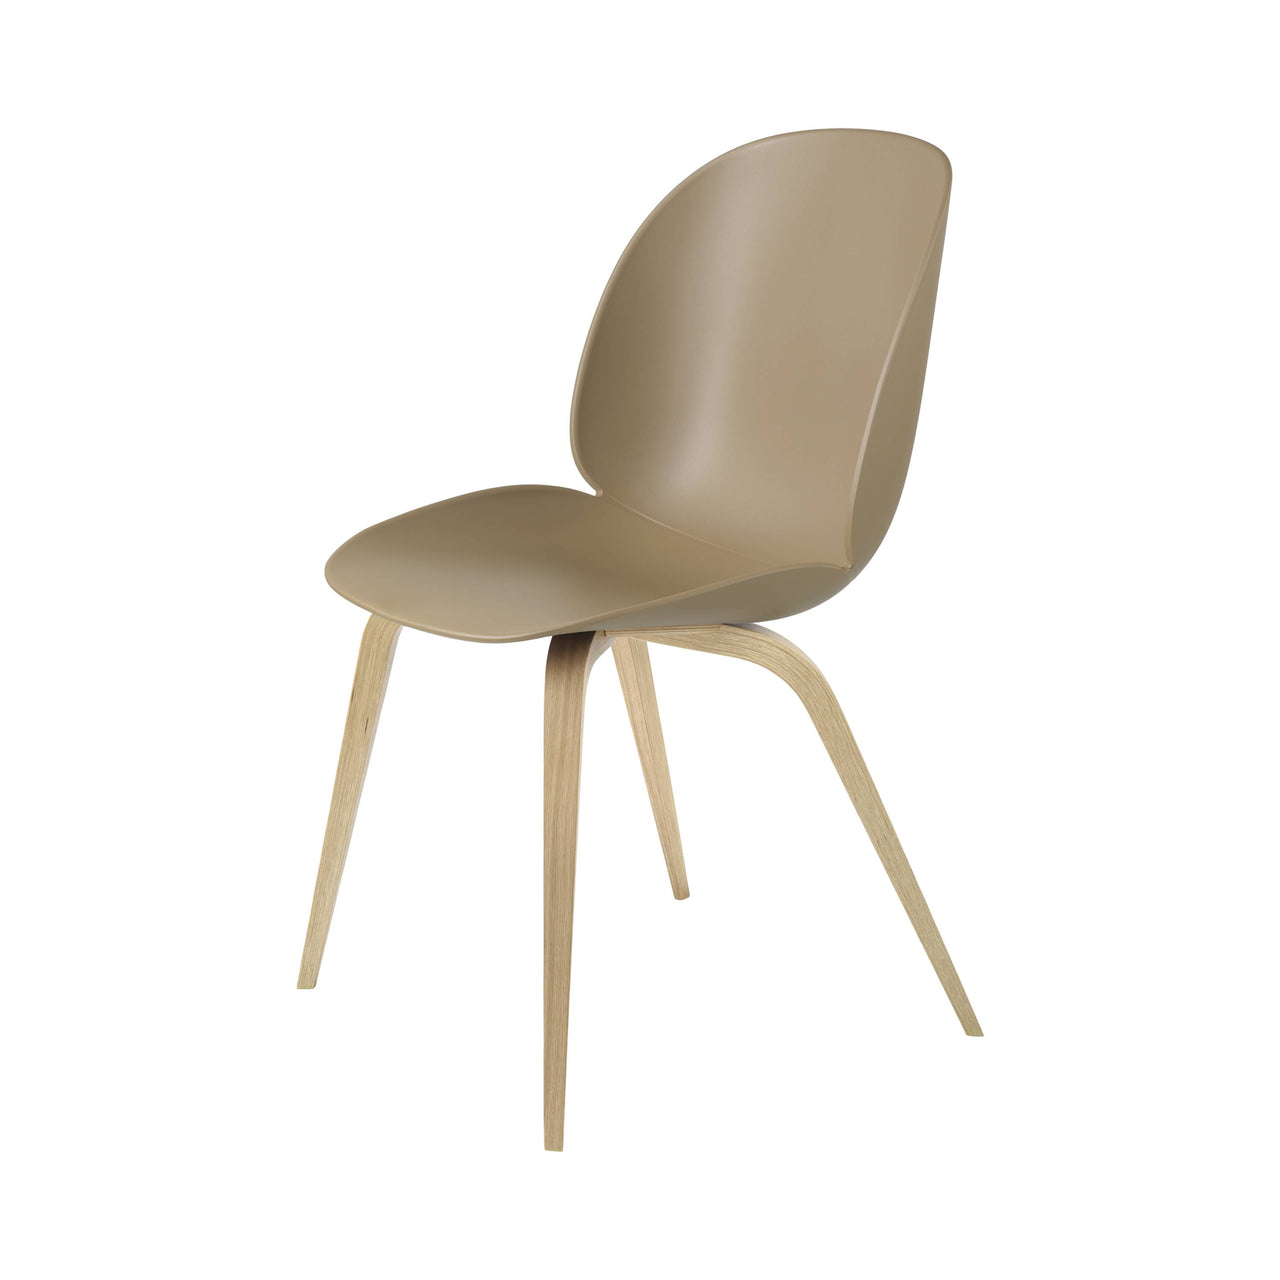 Beetle Dining Chair: Wood Base + Pebble Brown + Oak